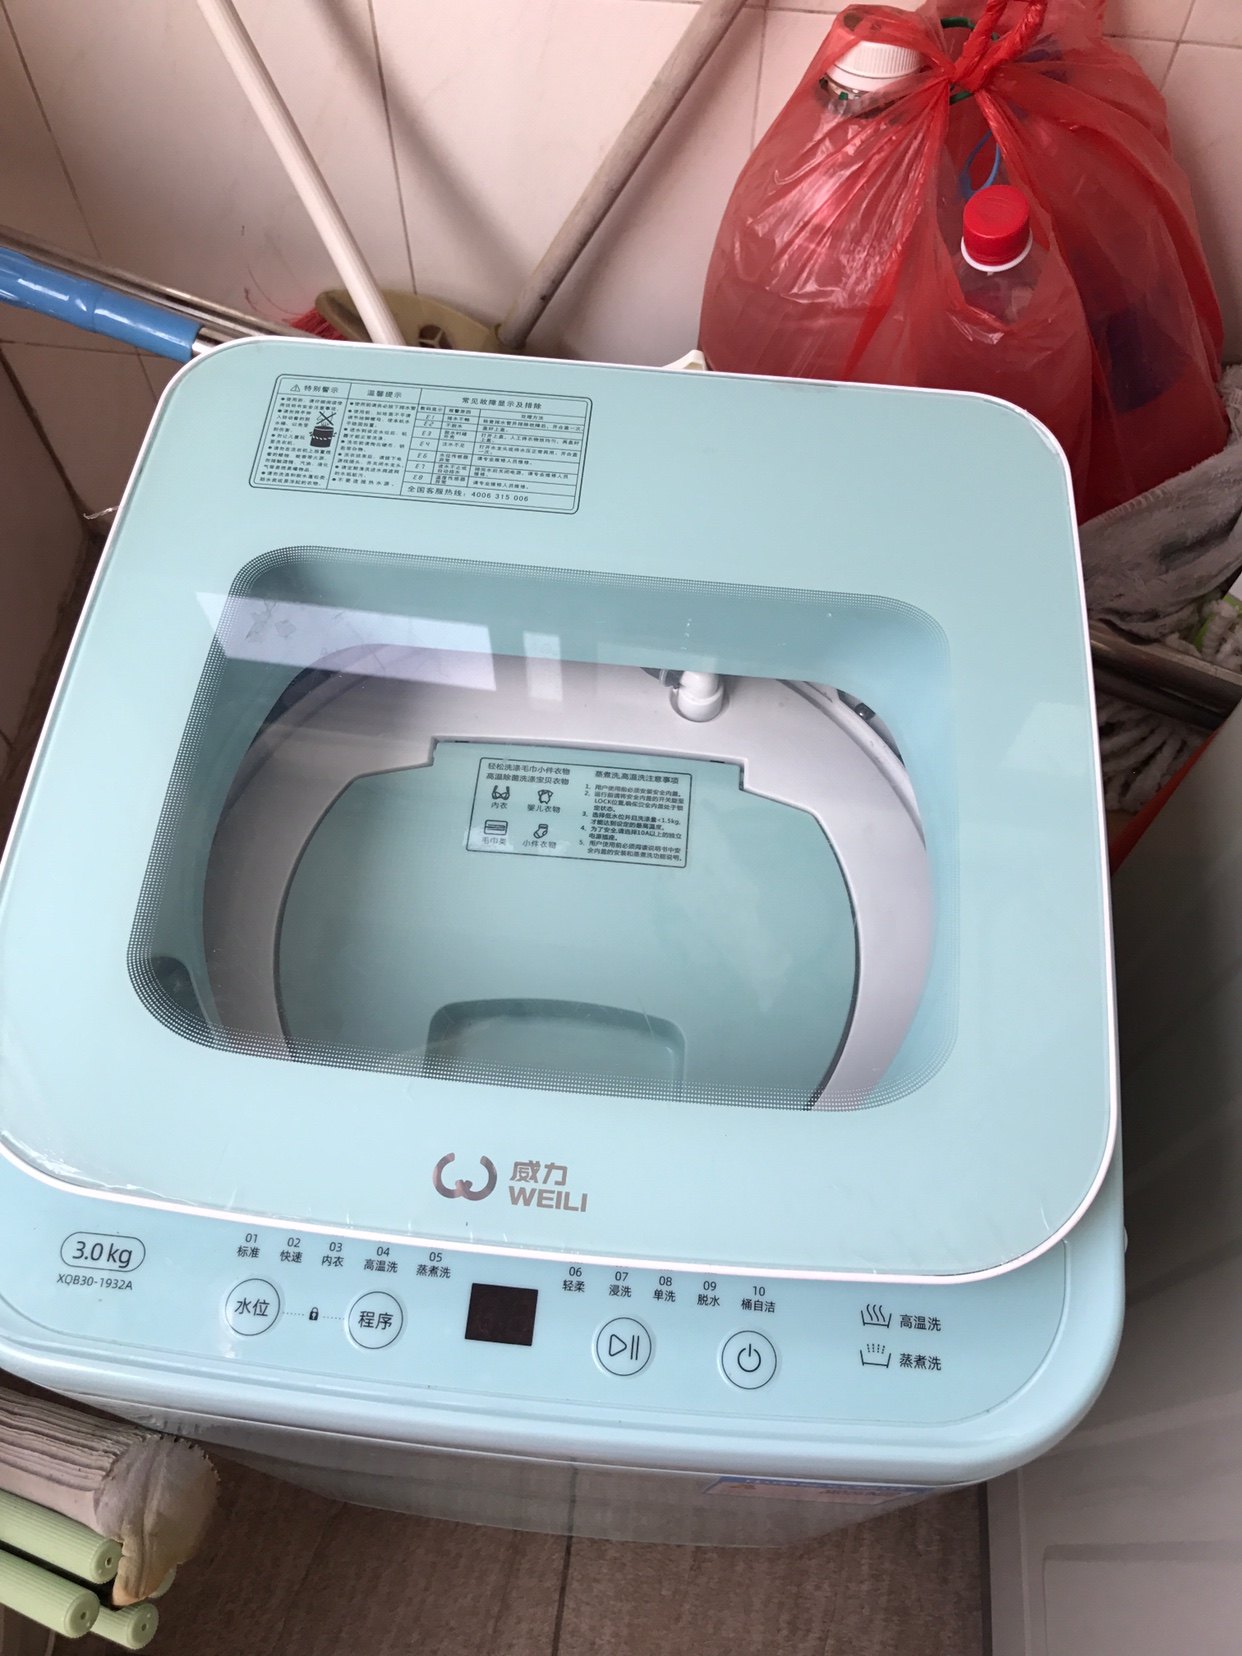 爱打扮(www.idaban.cn)，评测母婴洗衣机，家有萌娃清洁衣物好助手3